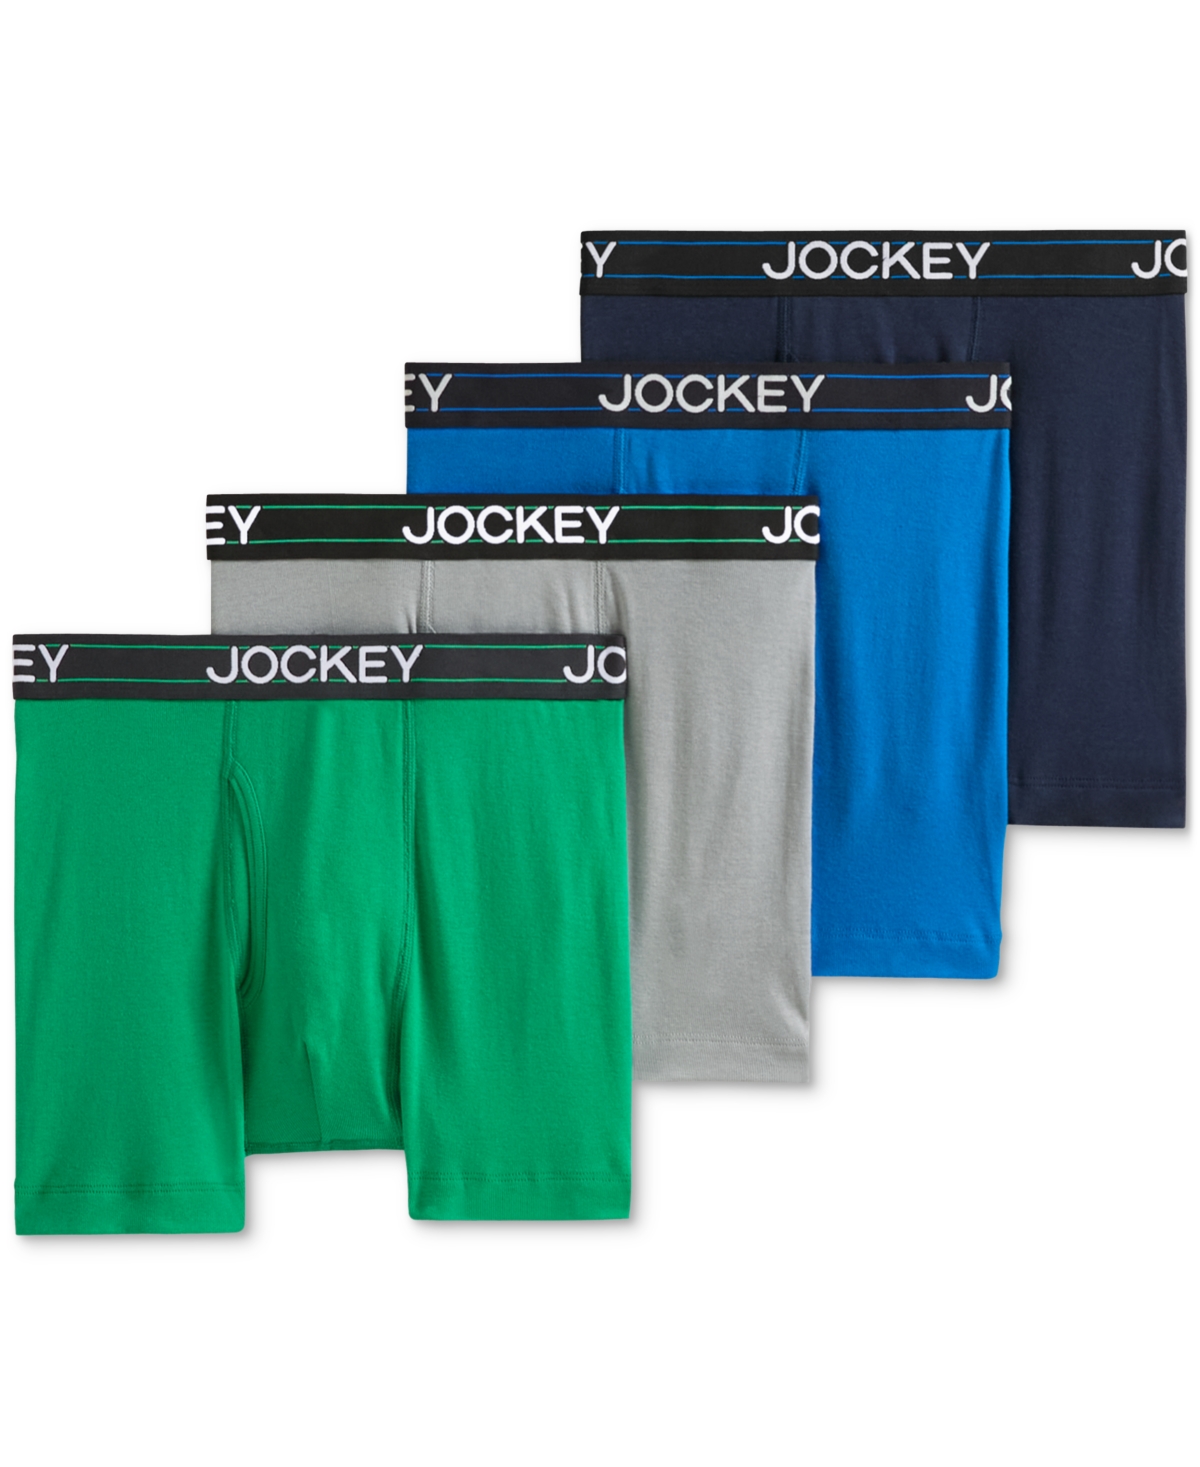 Men's Jockey Lightweight Cotton Blend 5" Boxer Briefs, Pack of 4 - Navy Heather/racing Red/rough Blue/quart